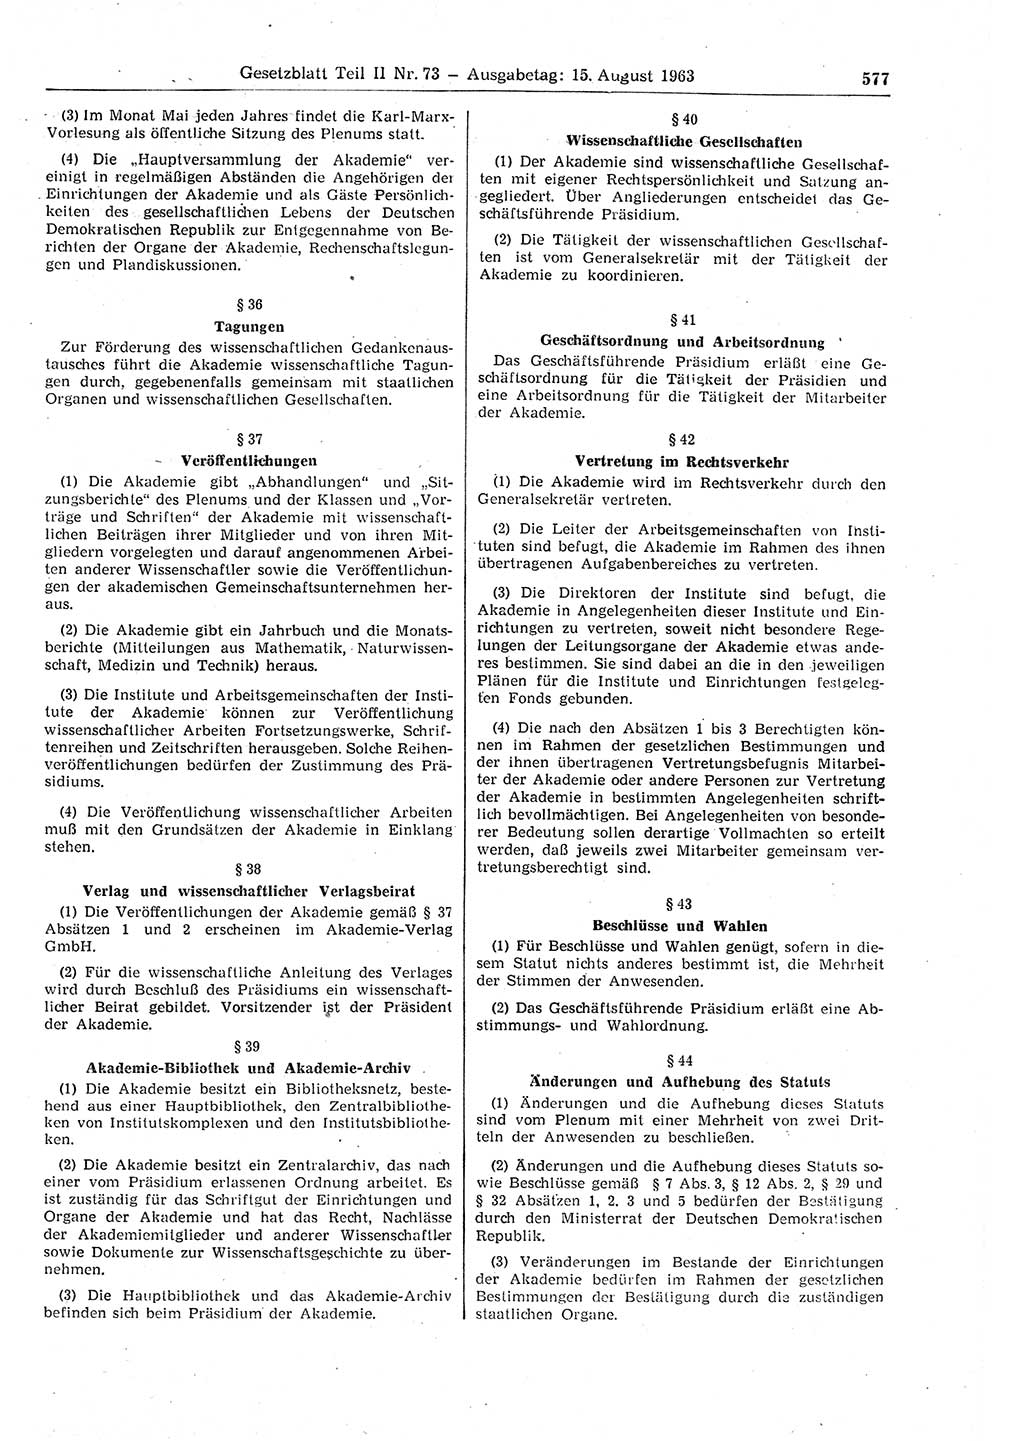 Gesetzblatt (GBl.) der Deutschen Demokratischen Republik (DDR) Teil ⅠⅠ 1963, Seite 577 (GBl. DDR ⅠⅠ 1963, S. 577)